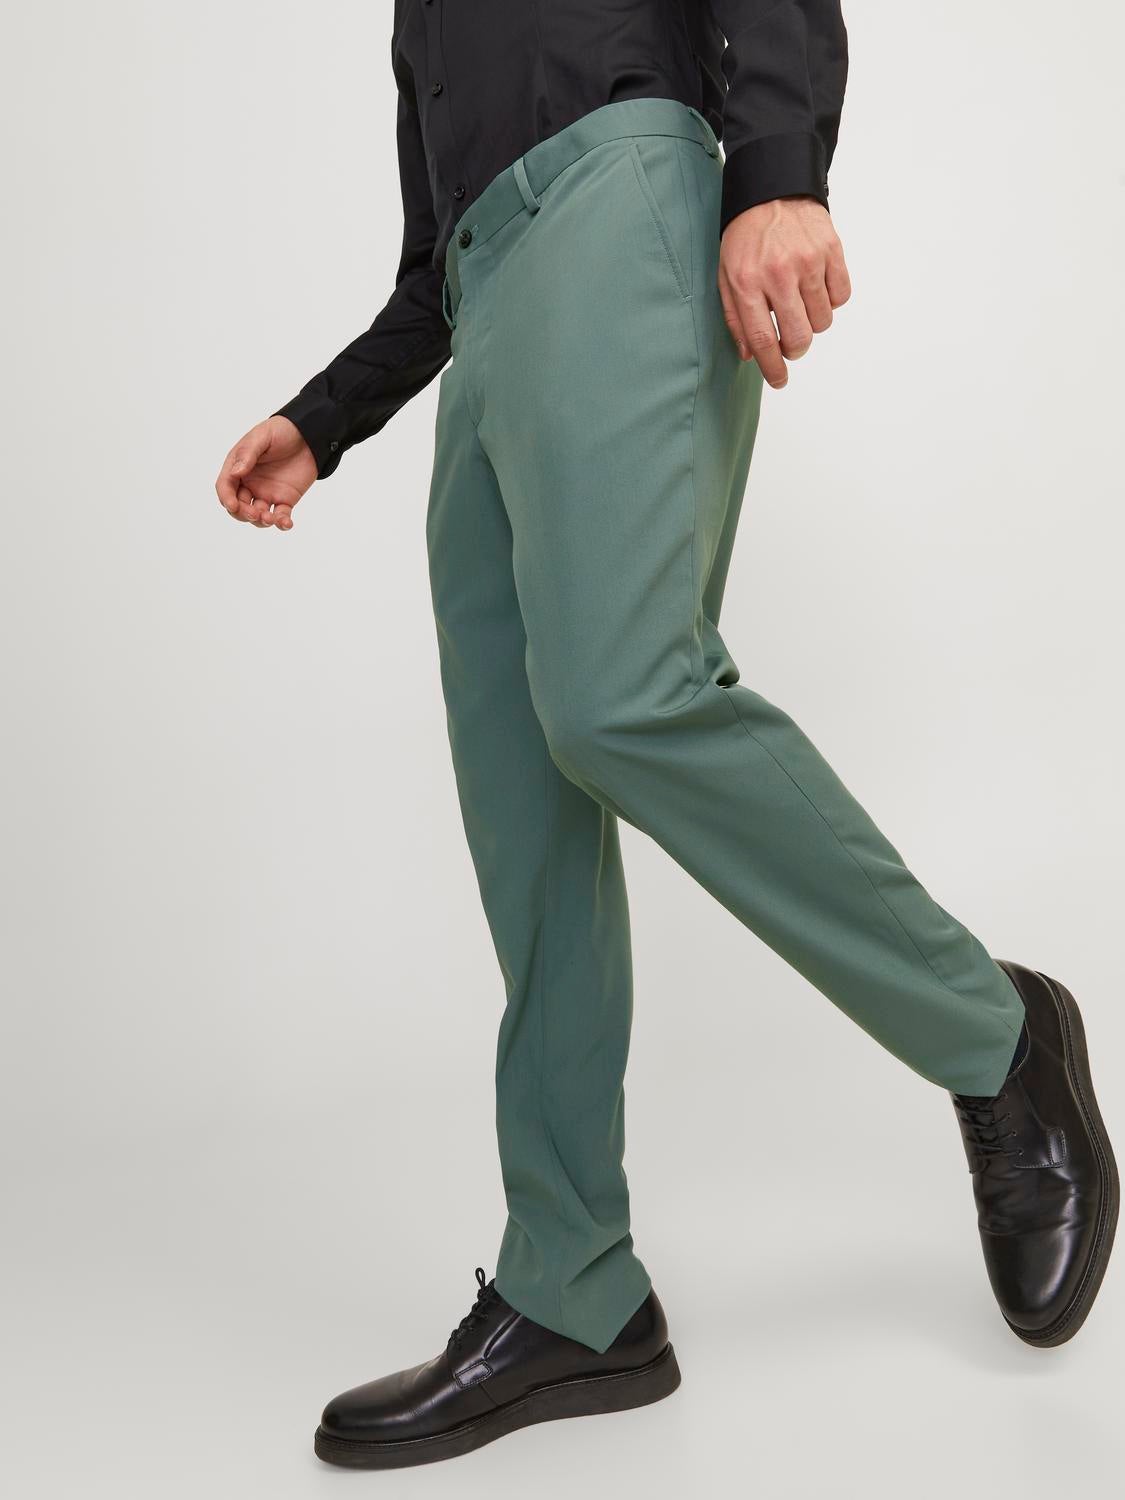 Buy Park Avenue Park Avenue Men Medium Brown Checks Super Slim Fit Work  Trouser | Park Avenue Trouser online | Brown